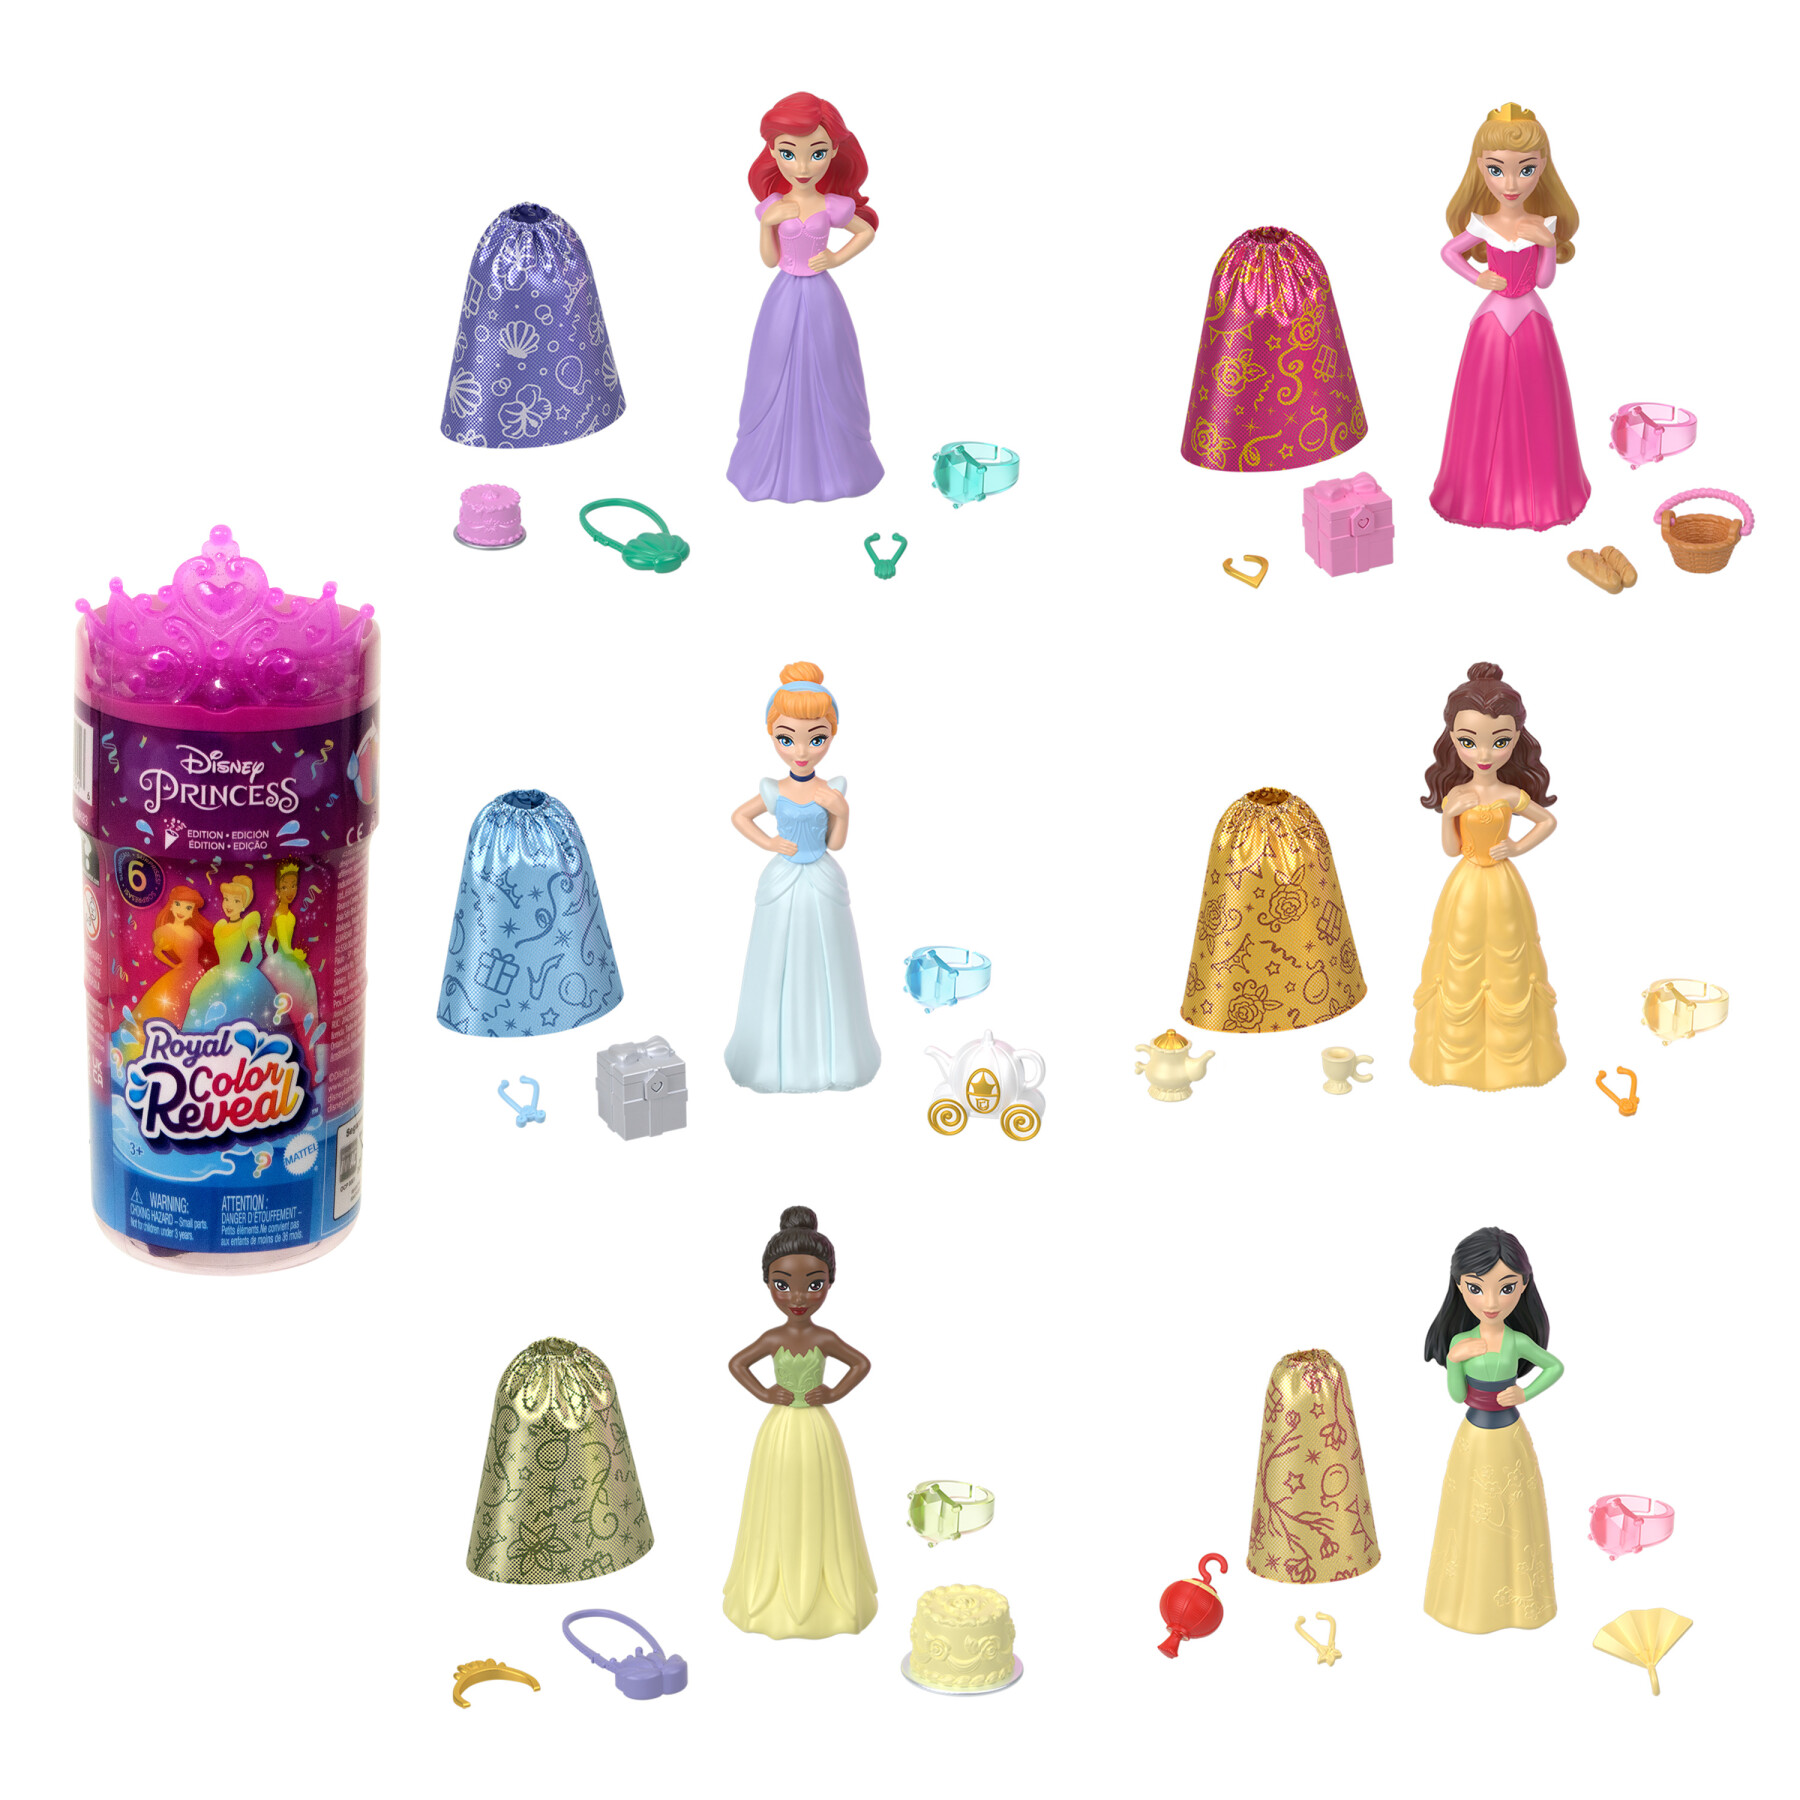 Disney princess royal color reveal™ edizione party assortimento - DISNEY PRINCESS